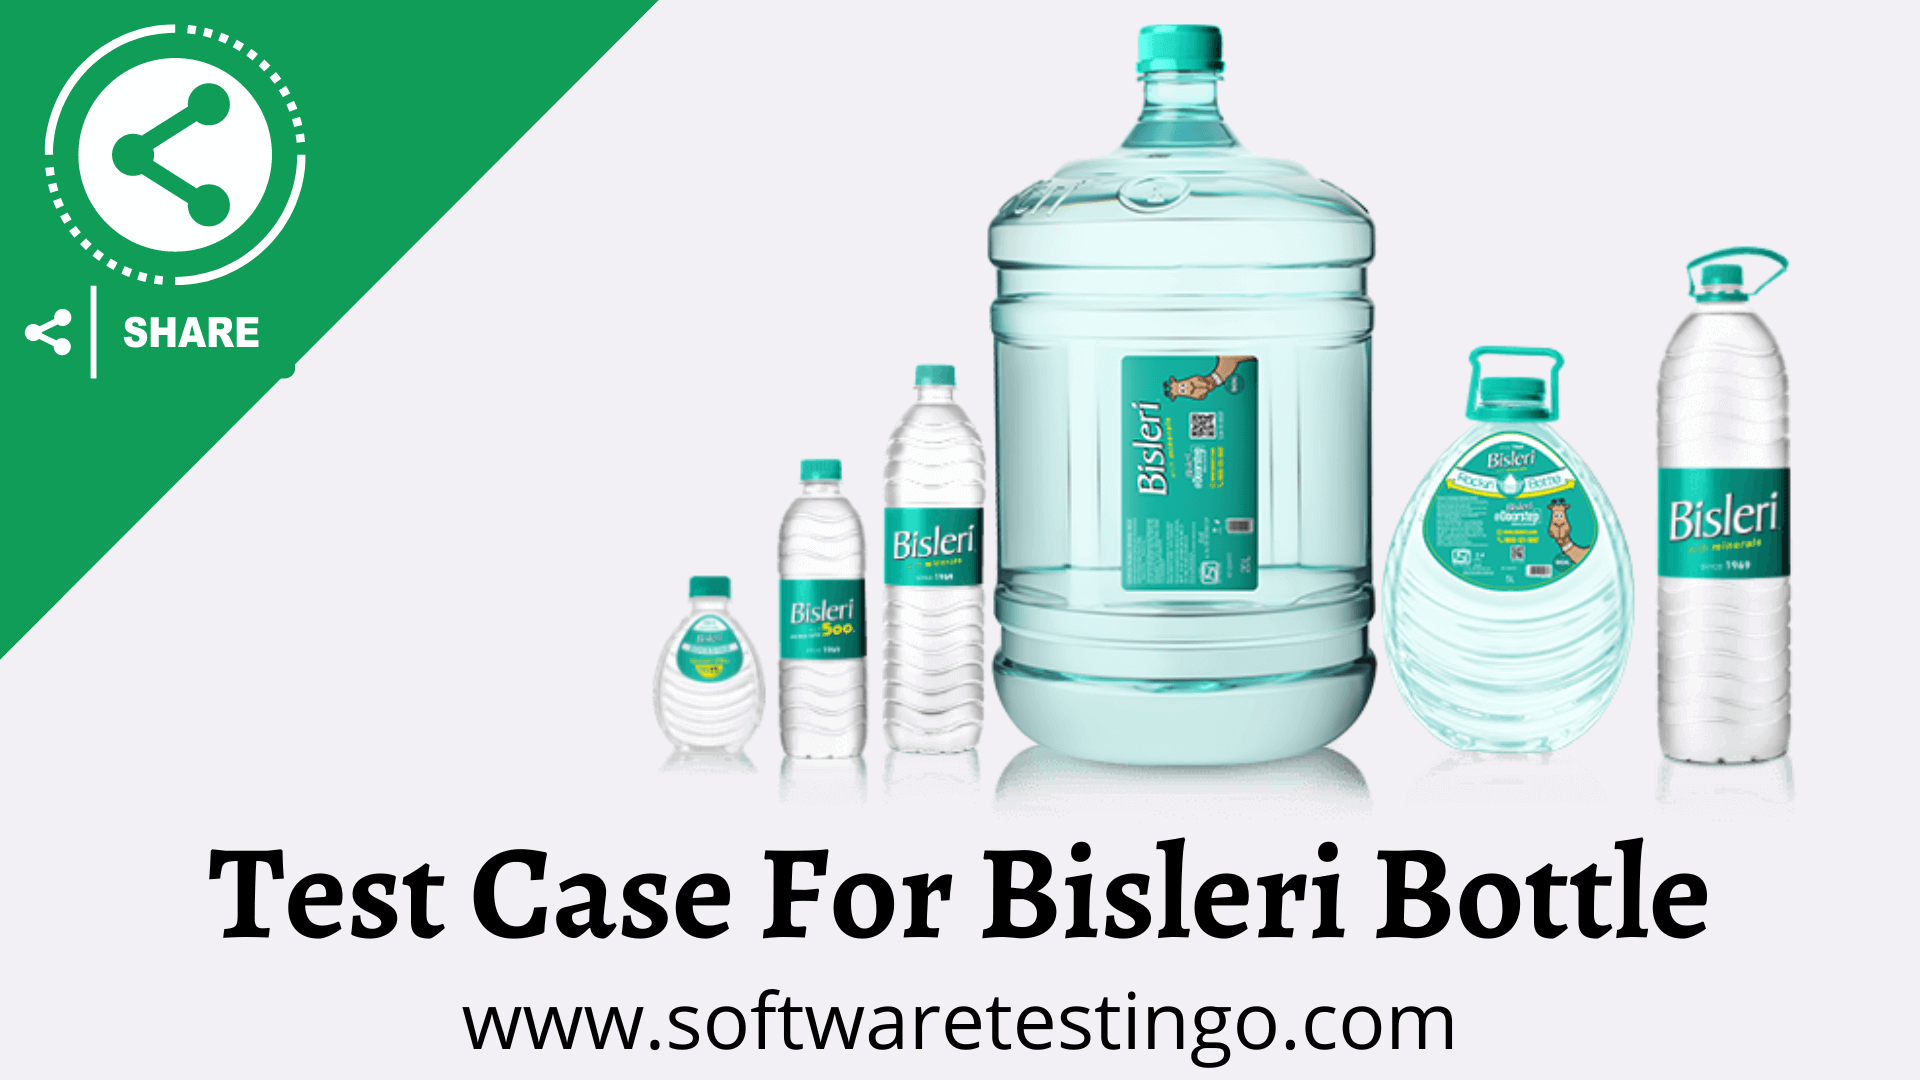 Test Case For Bisleri Bottle